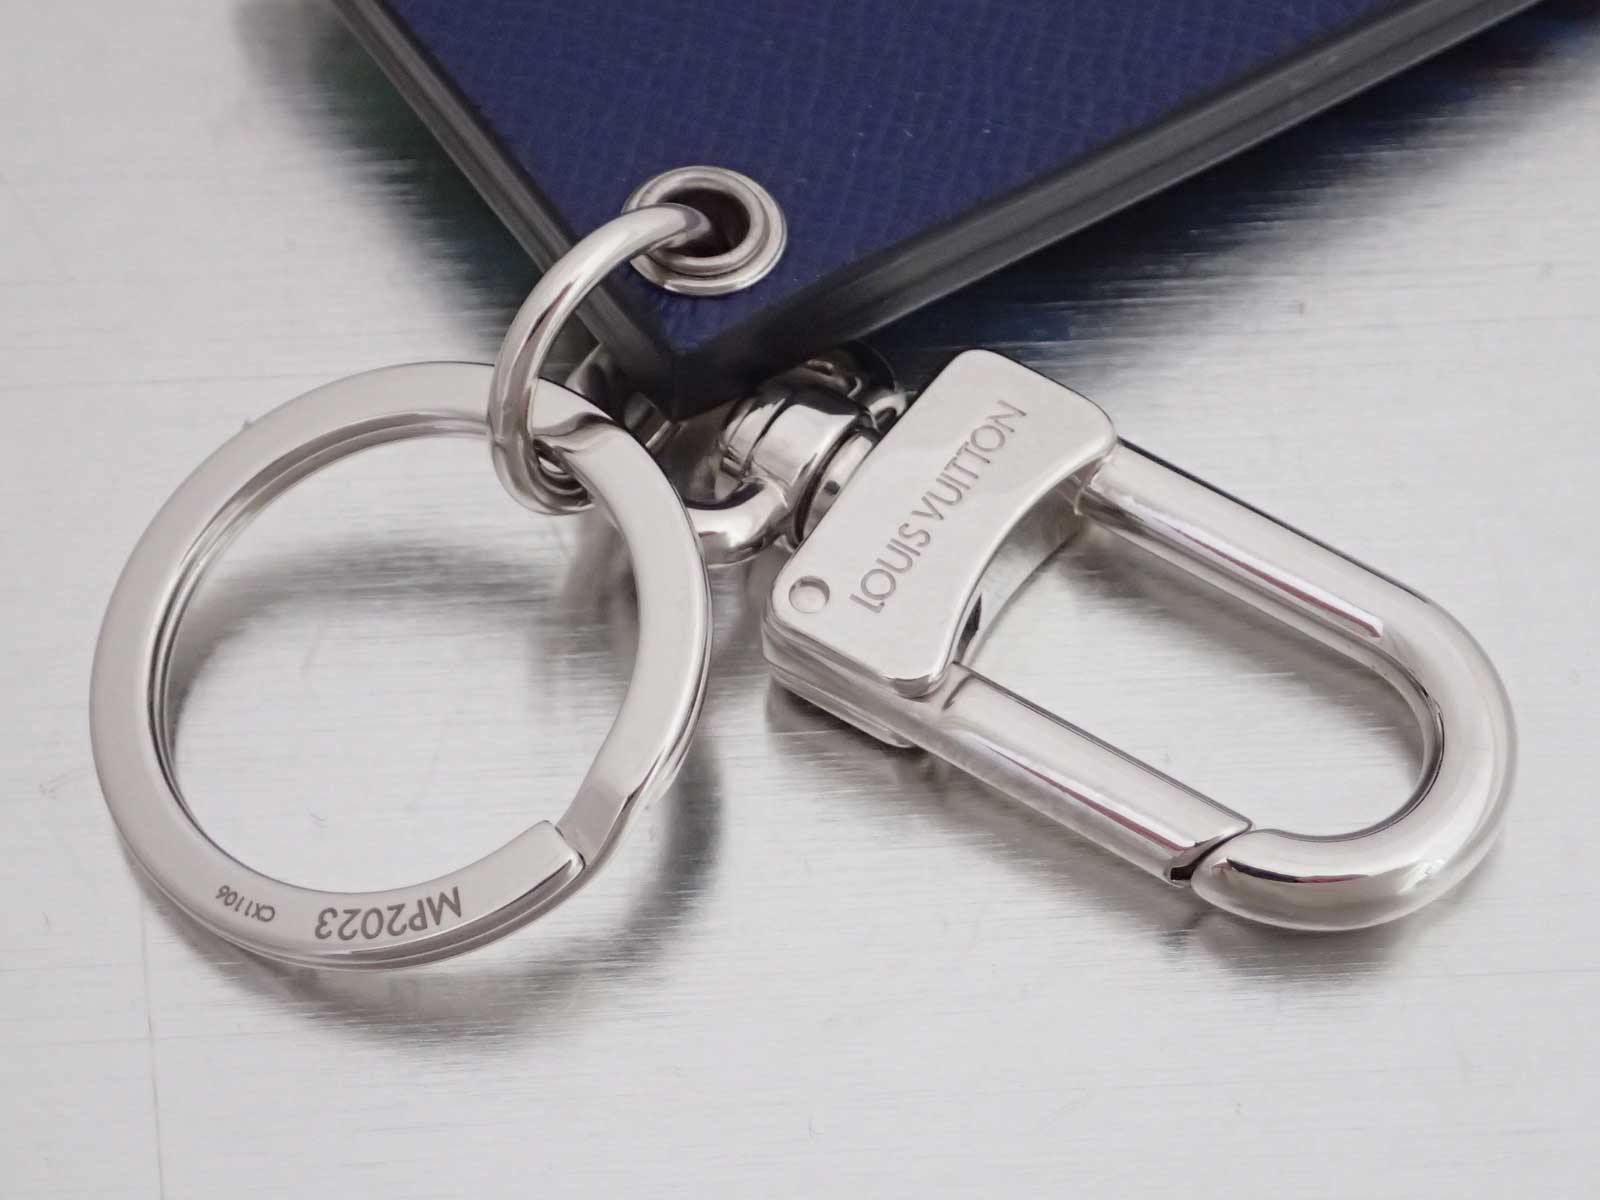 Auth Louis Vuitton Epi Petit Malle Bag Charm Key Holder Silver/Multicolor e44137 | eBay